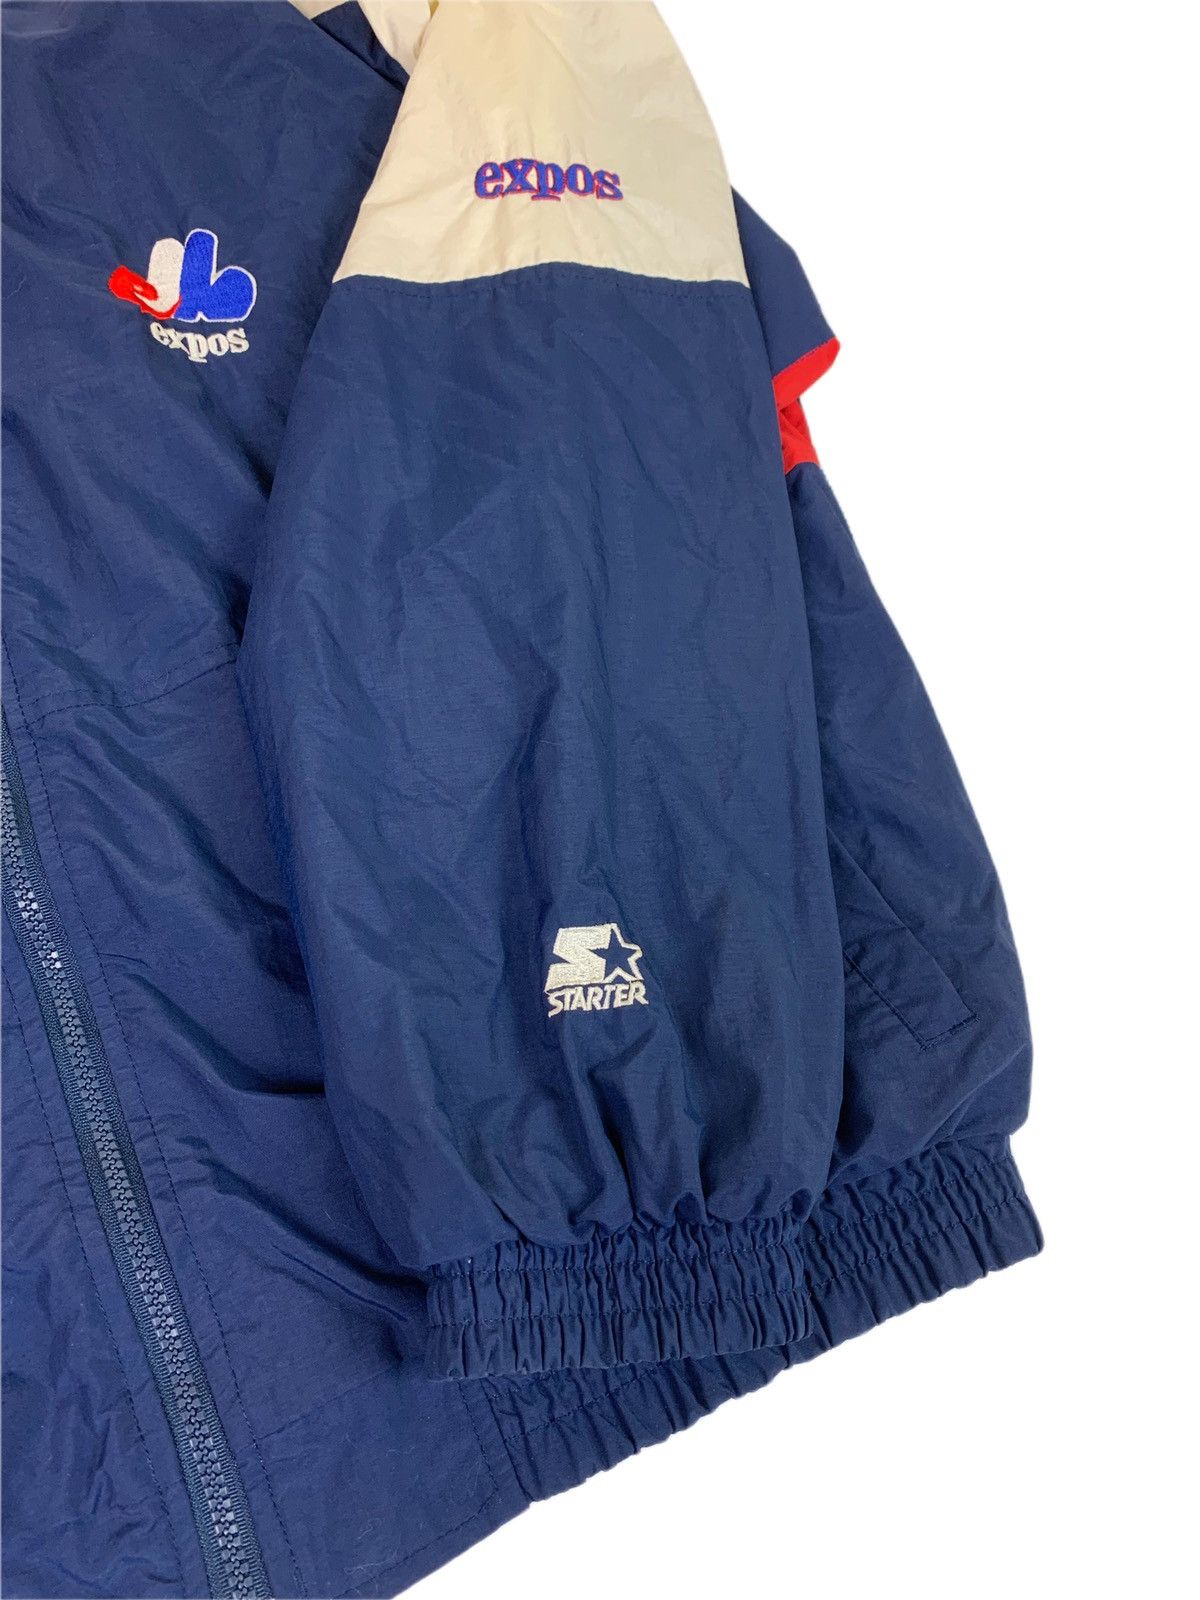 Vintage Vintage Montreal Expos Starter Windbreaker Jacket Size US XL / EU 56 / 4 - 4 Thumbnail